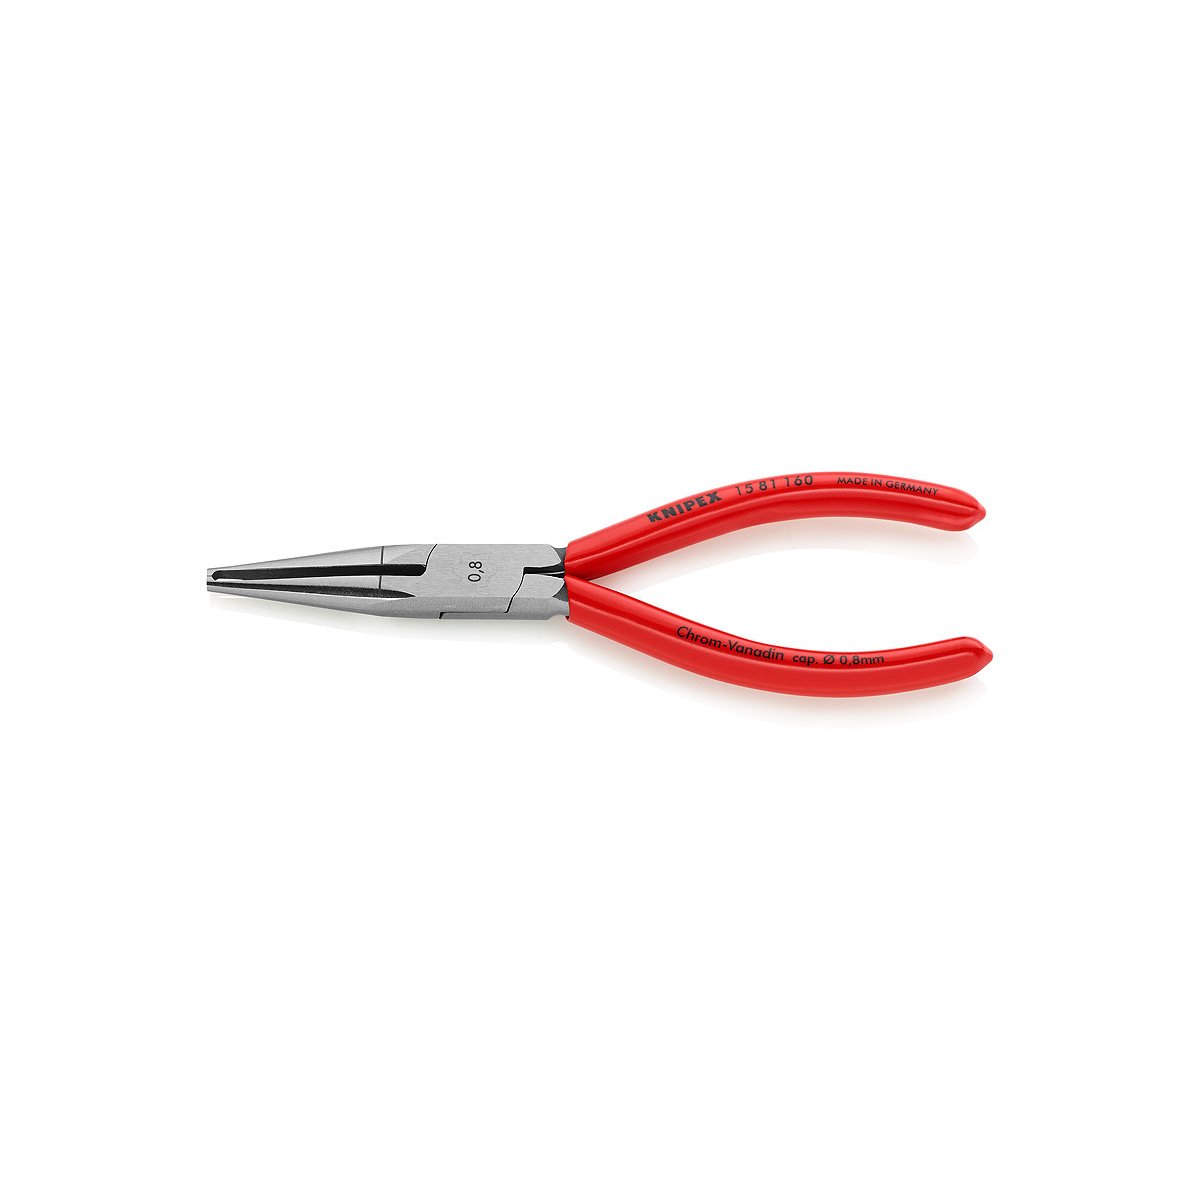 Стриппер для тонких кабелей, Ø 0.8 мм, прецизионная призма, 160 мм, обливные ручки